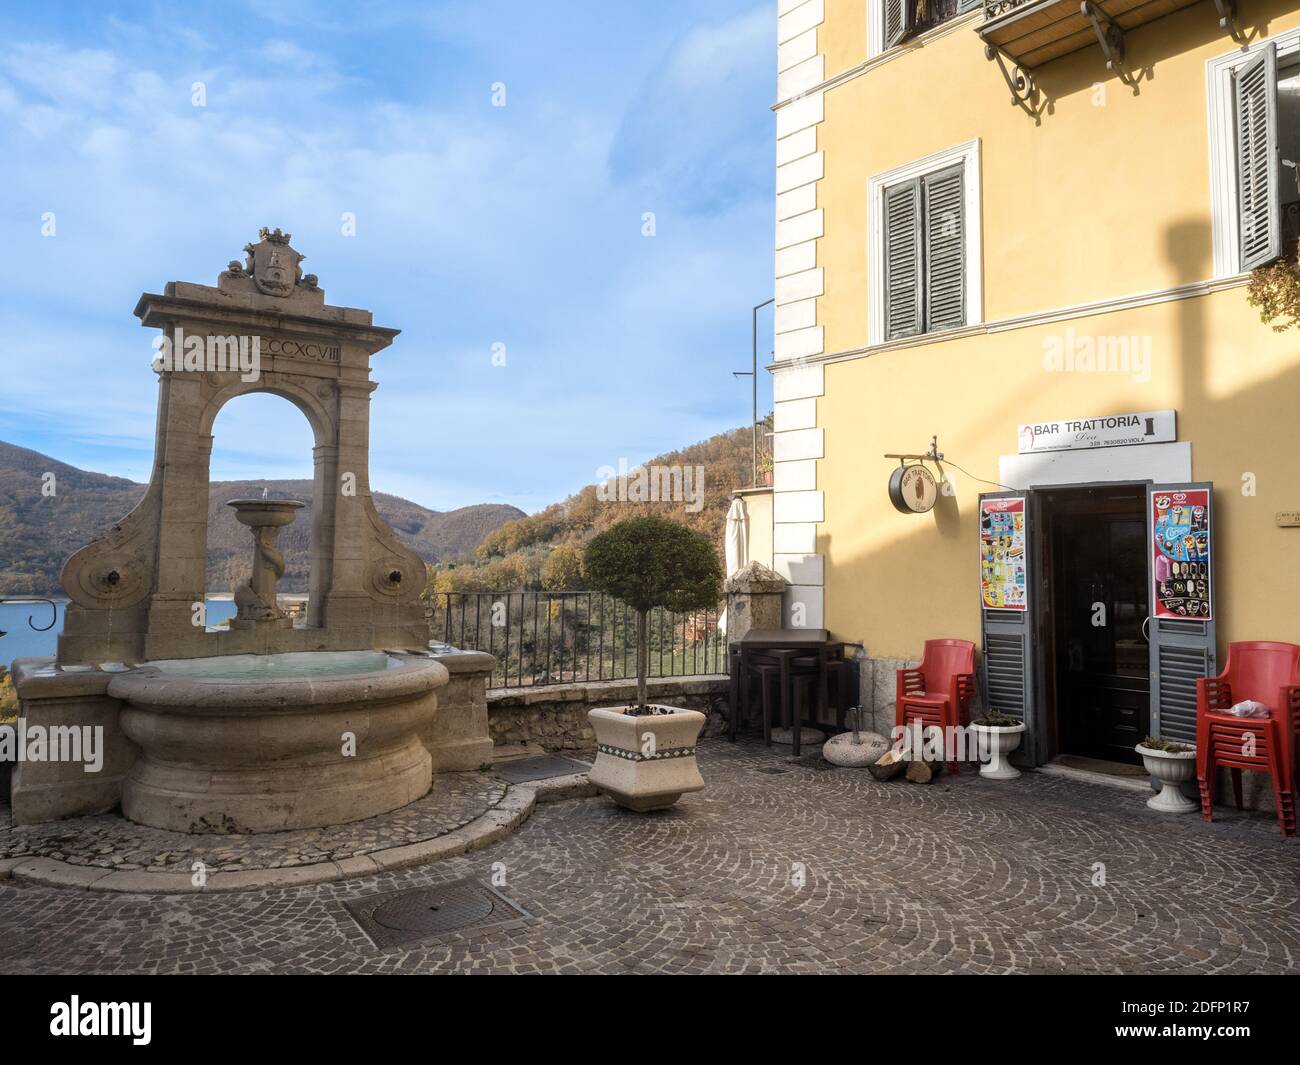 Un bar et trattoria dans la petite ville de Castel di Tora près du lac Turano - Rieti, Italie Banque D'Images